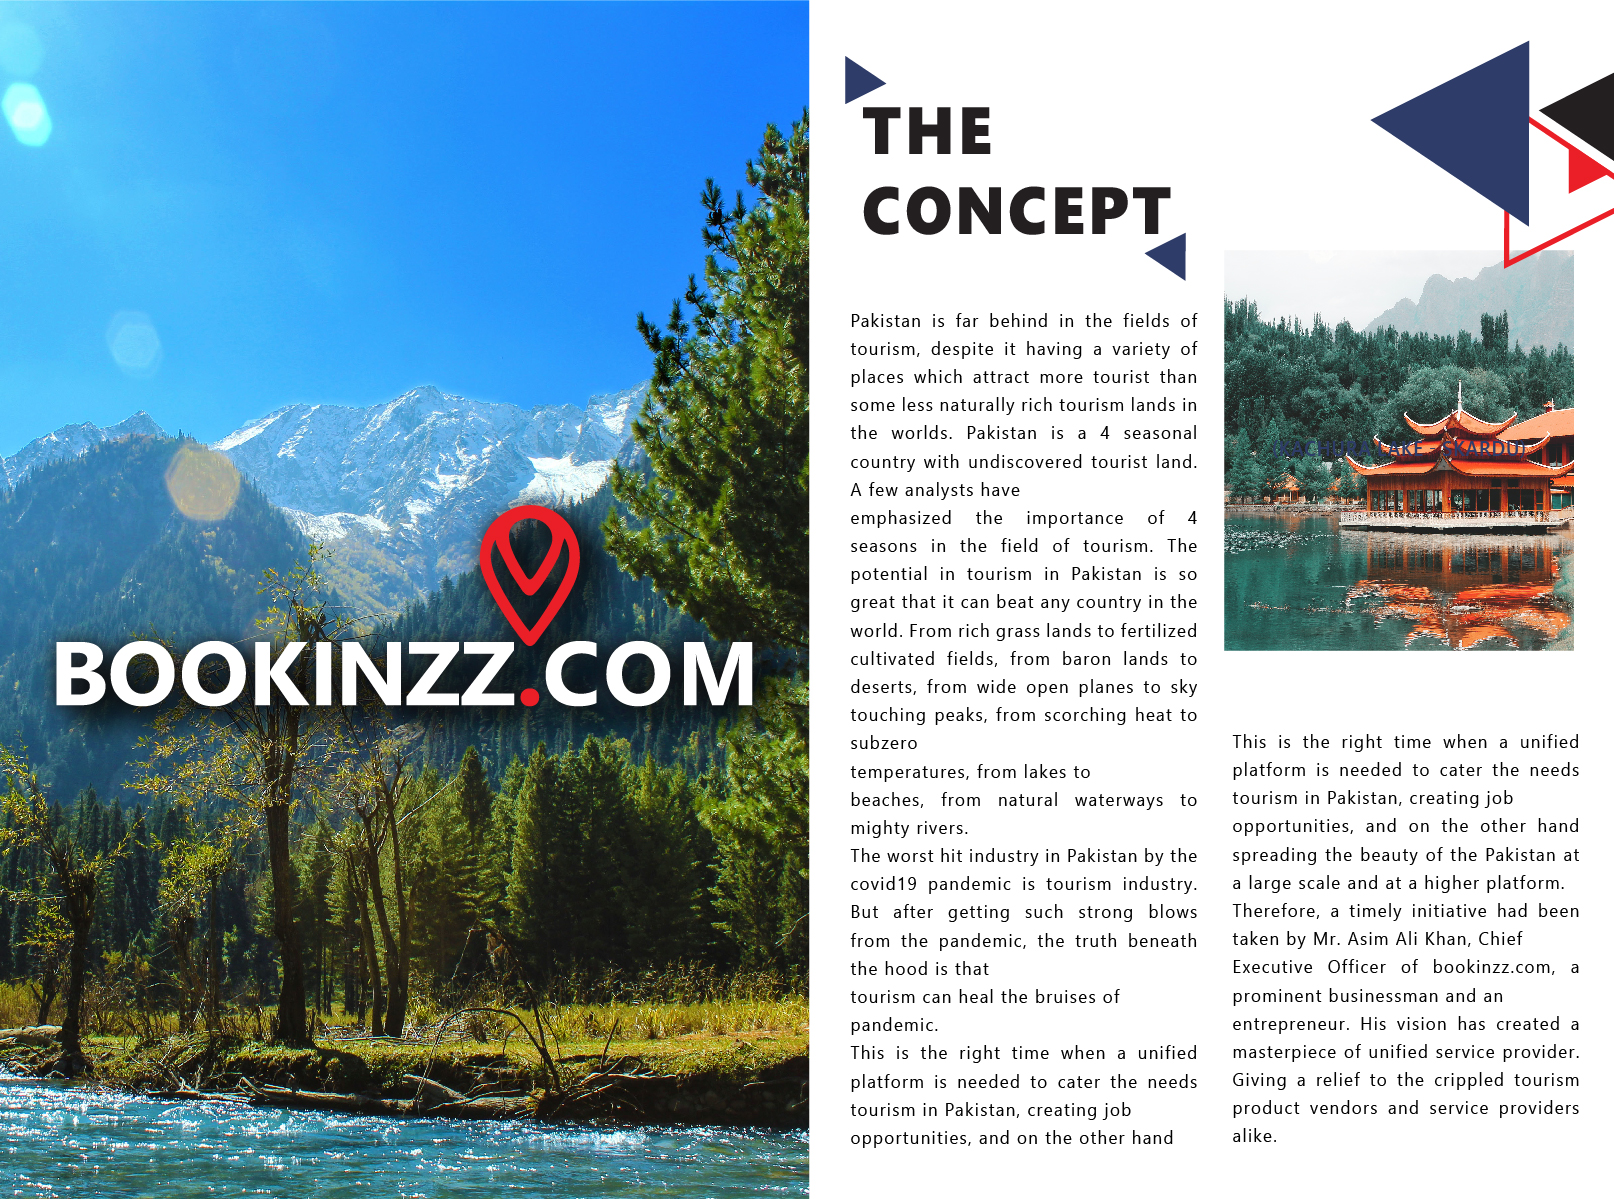 Bookinzz.com company profile The Concept